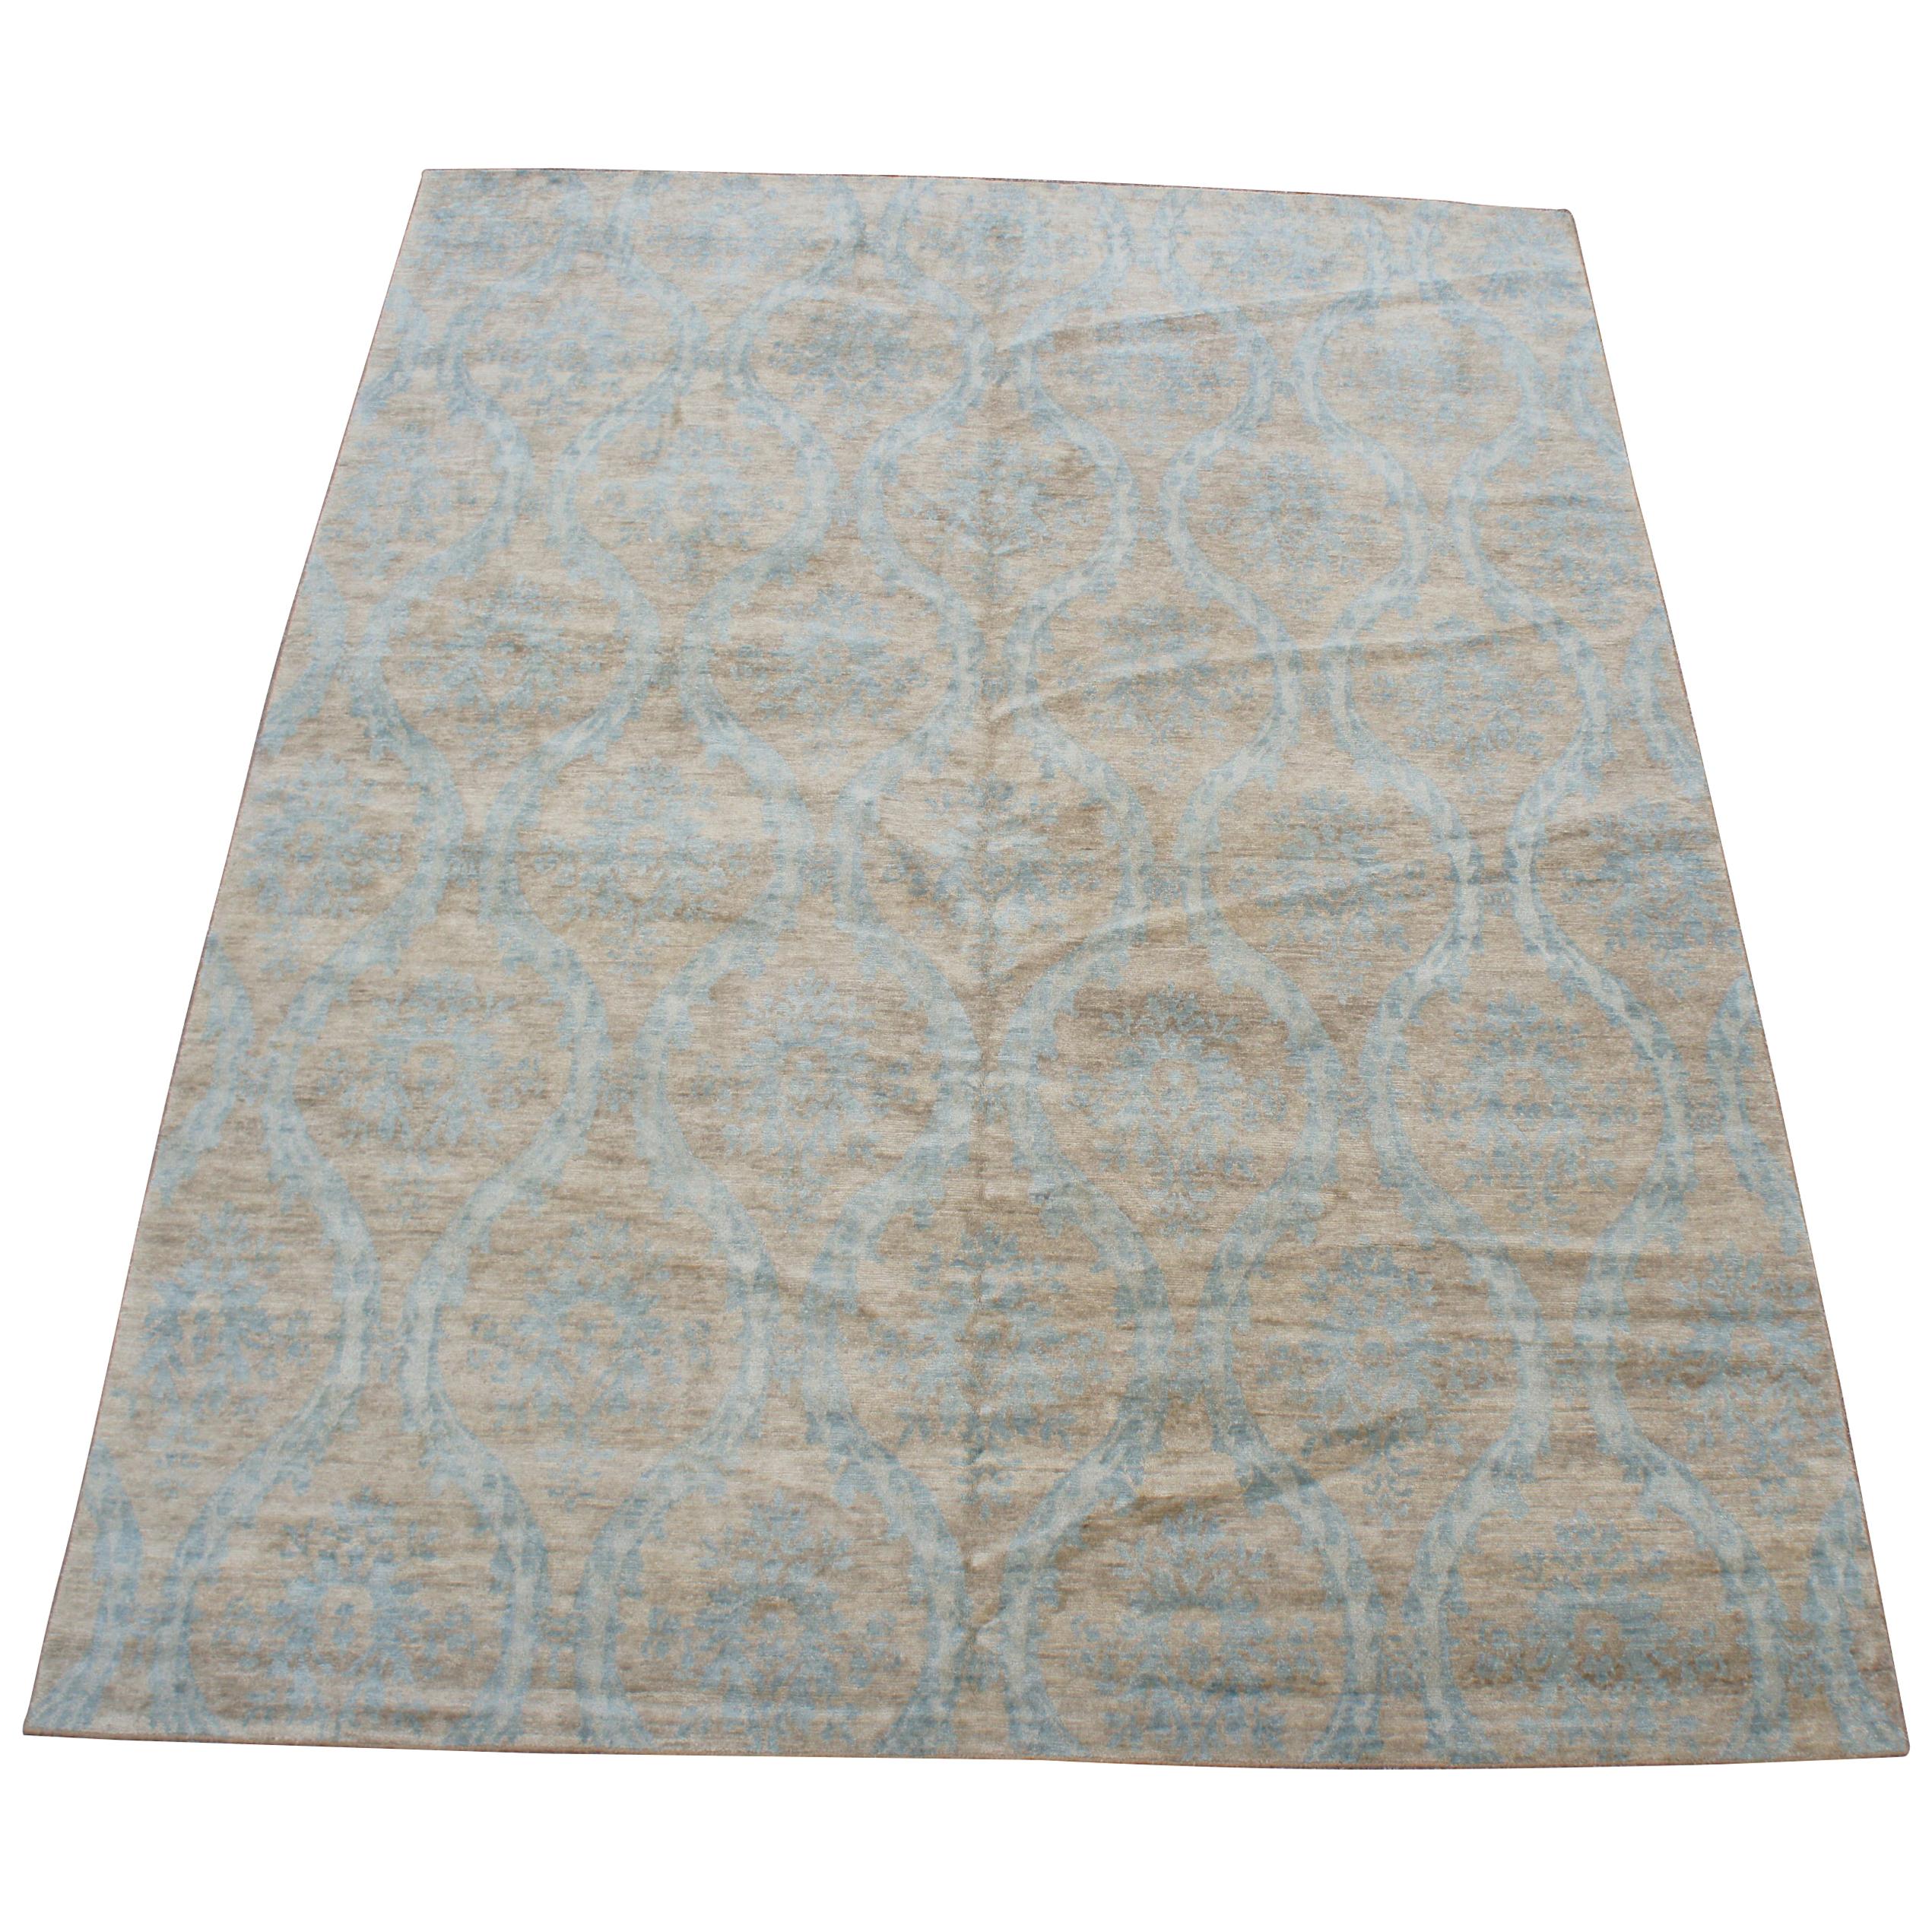 Vintage Kalaty Royal Manner Derbyshire 100% Wool Area Rug Carpet India